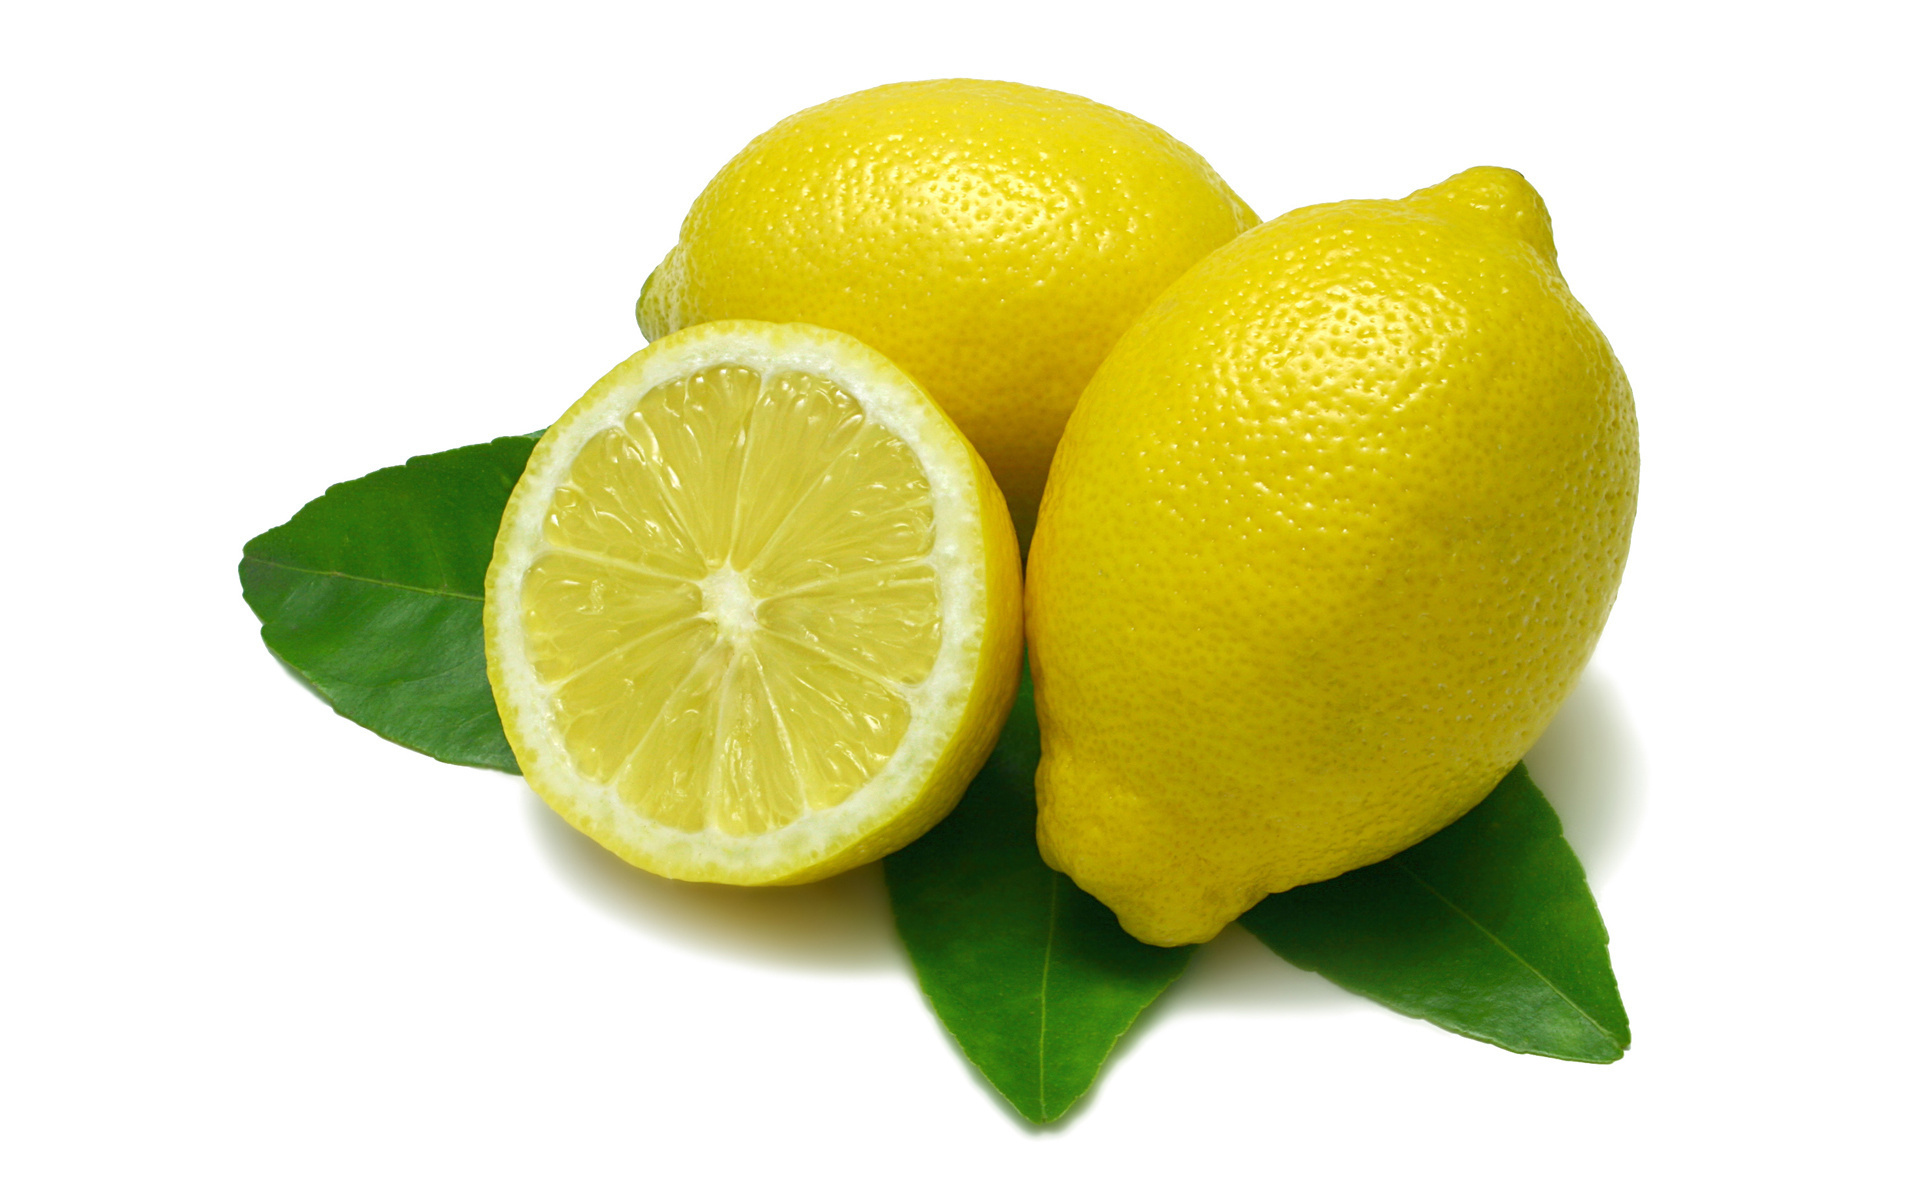 레몬 벽지 hd,라임,키 라임,레몬,감귤류,달콤한 레몬